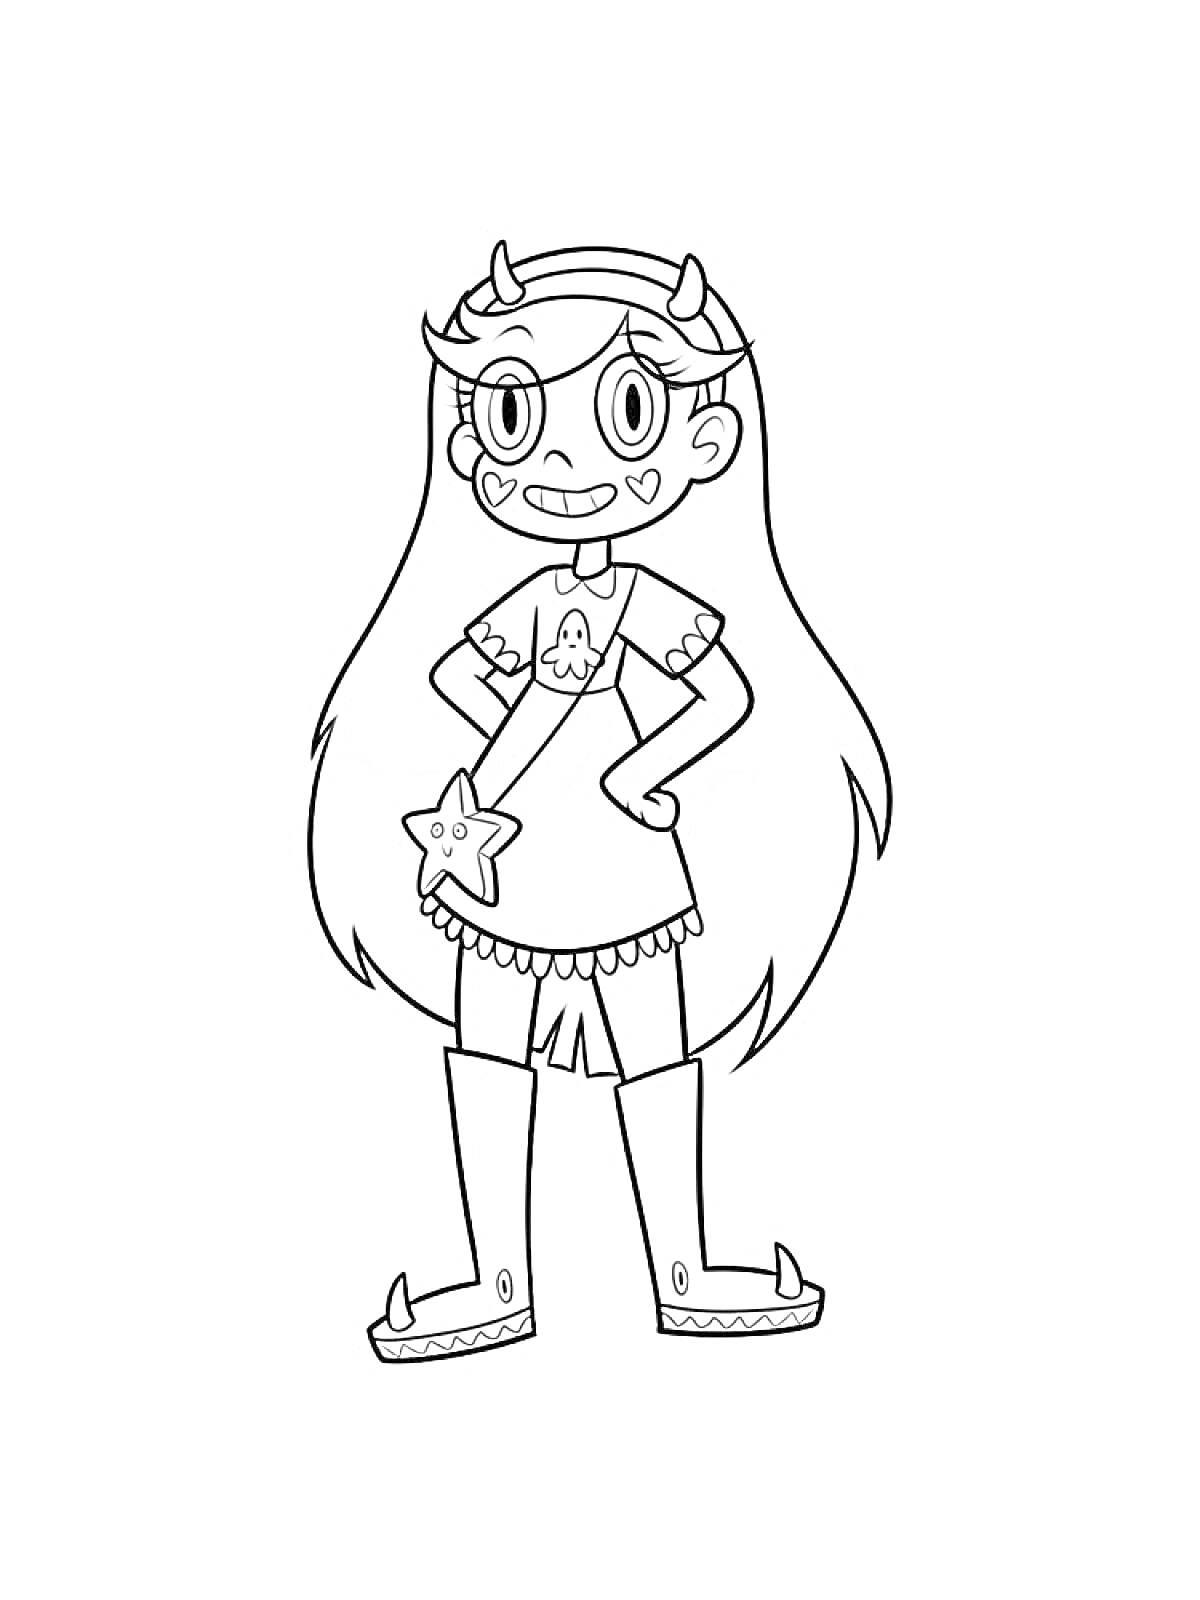 Раскраска Девочка-звездочка с длинными волосами, рожками на голове, сердечками на щеках, в платье с символом осьминога и модные сапоги